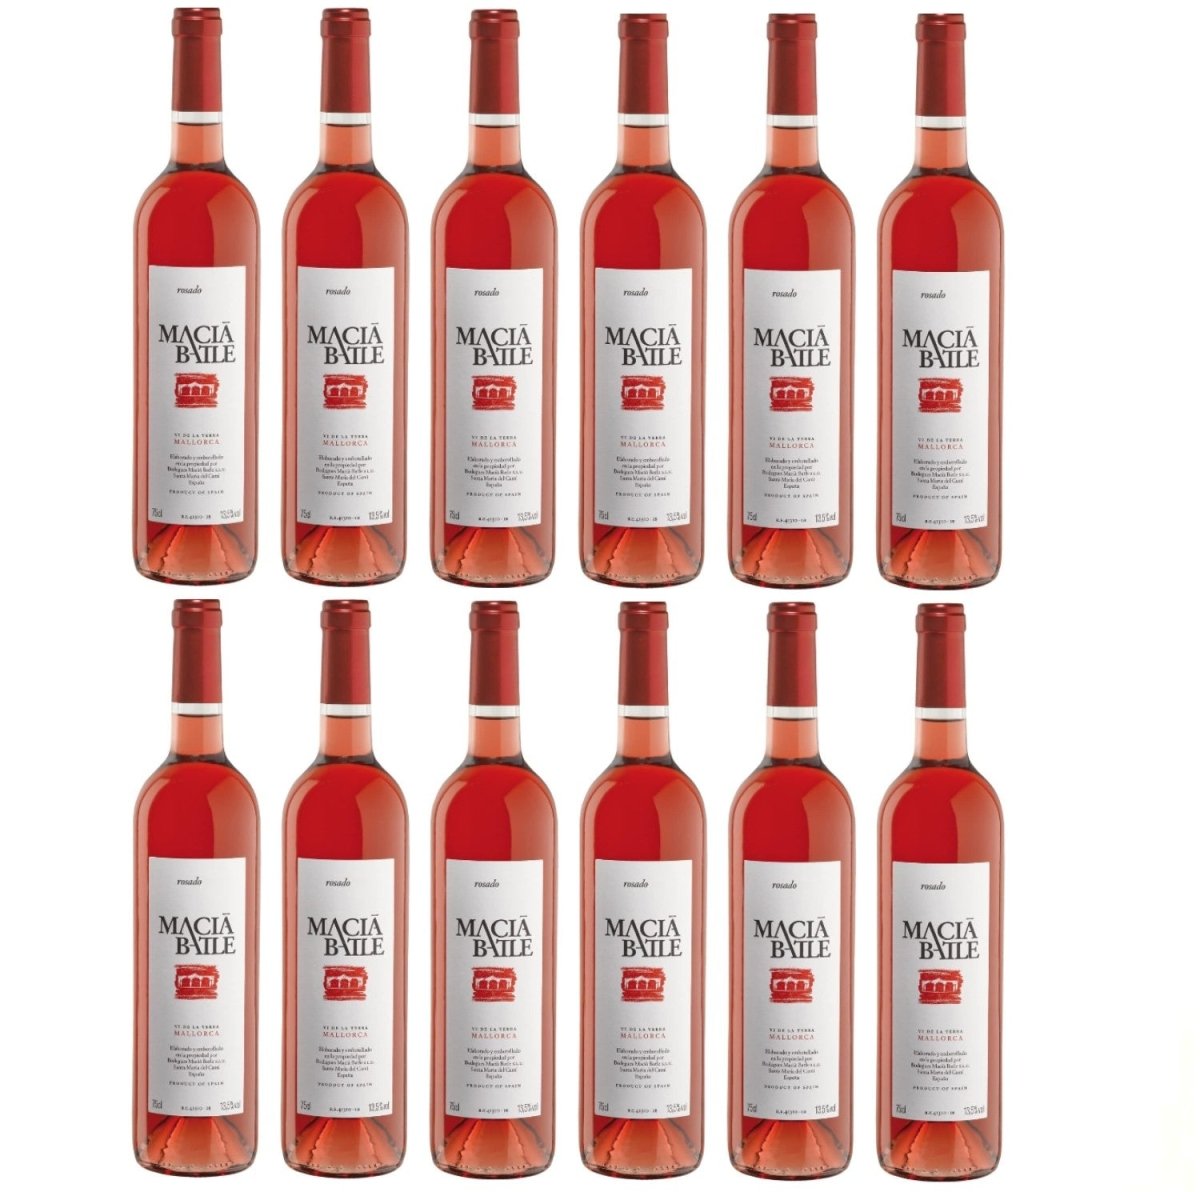 Macià Batle Rosado Roséwein Wein trocken Spanien (12 x 0,75l) – Versanel